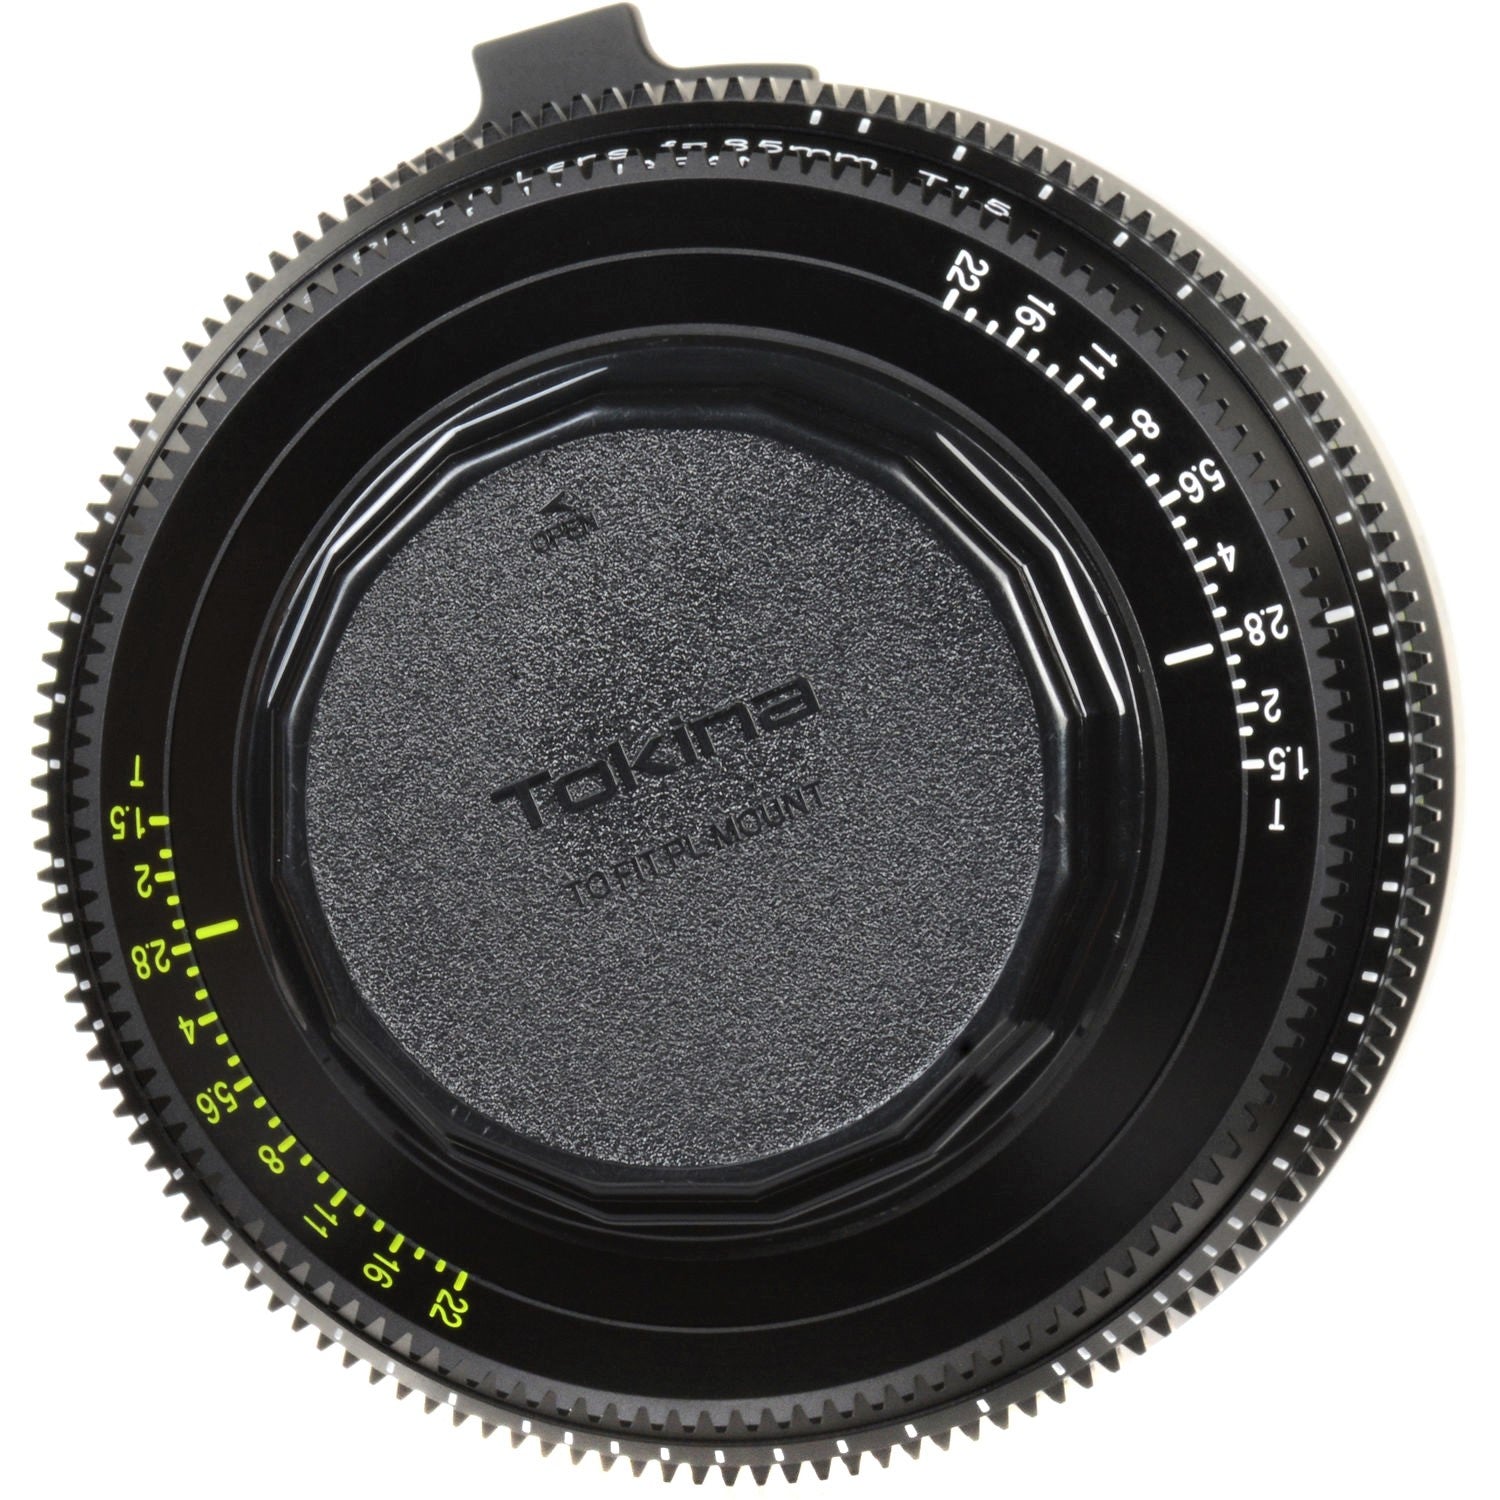 Tokina Cinema Vista Prime 85mm T1.5 Lens (PL Mount) in a Back Close-Up View